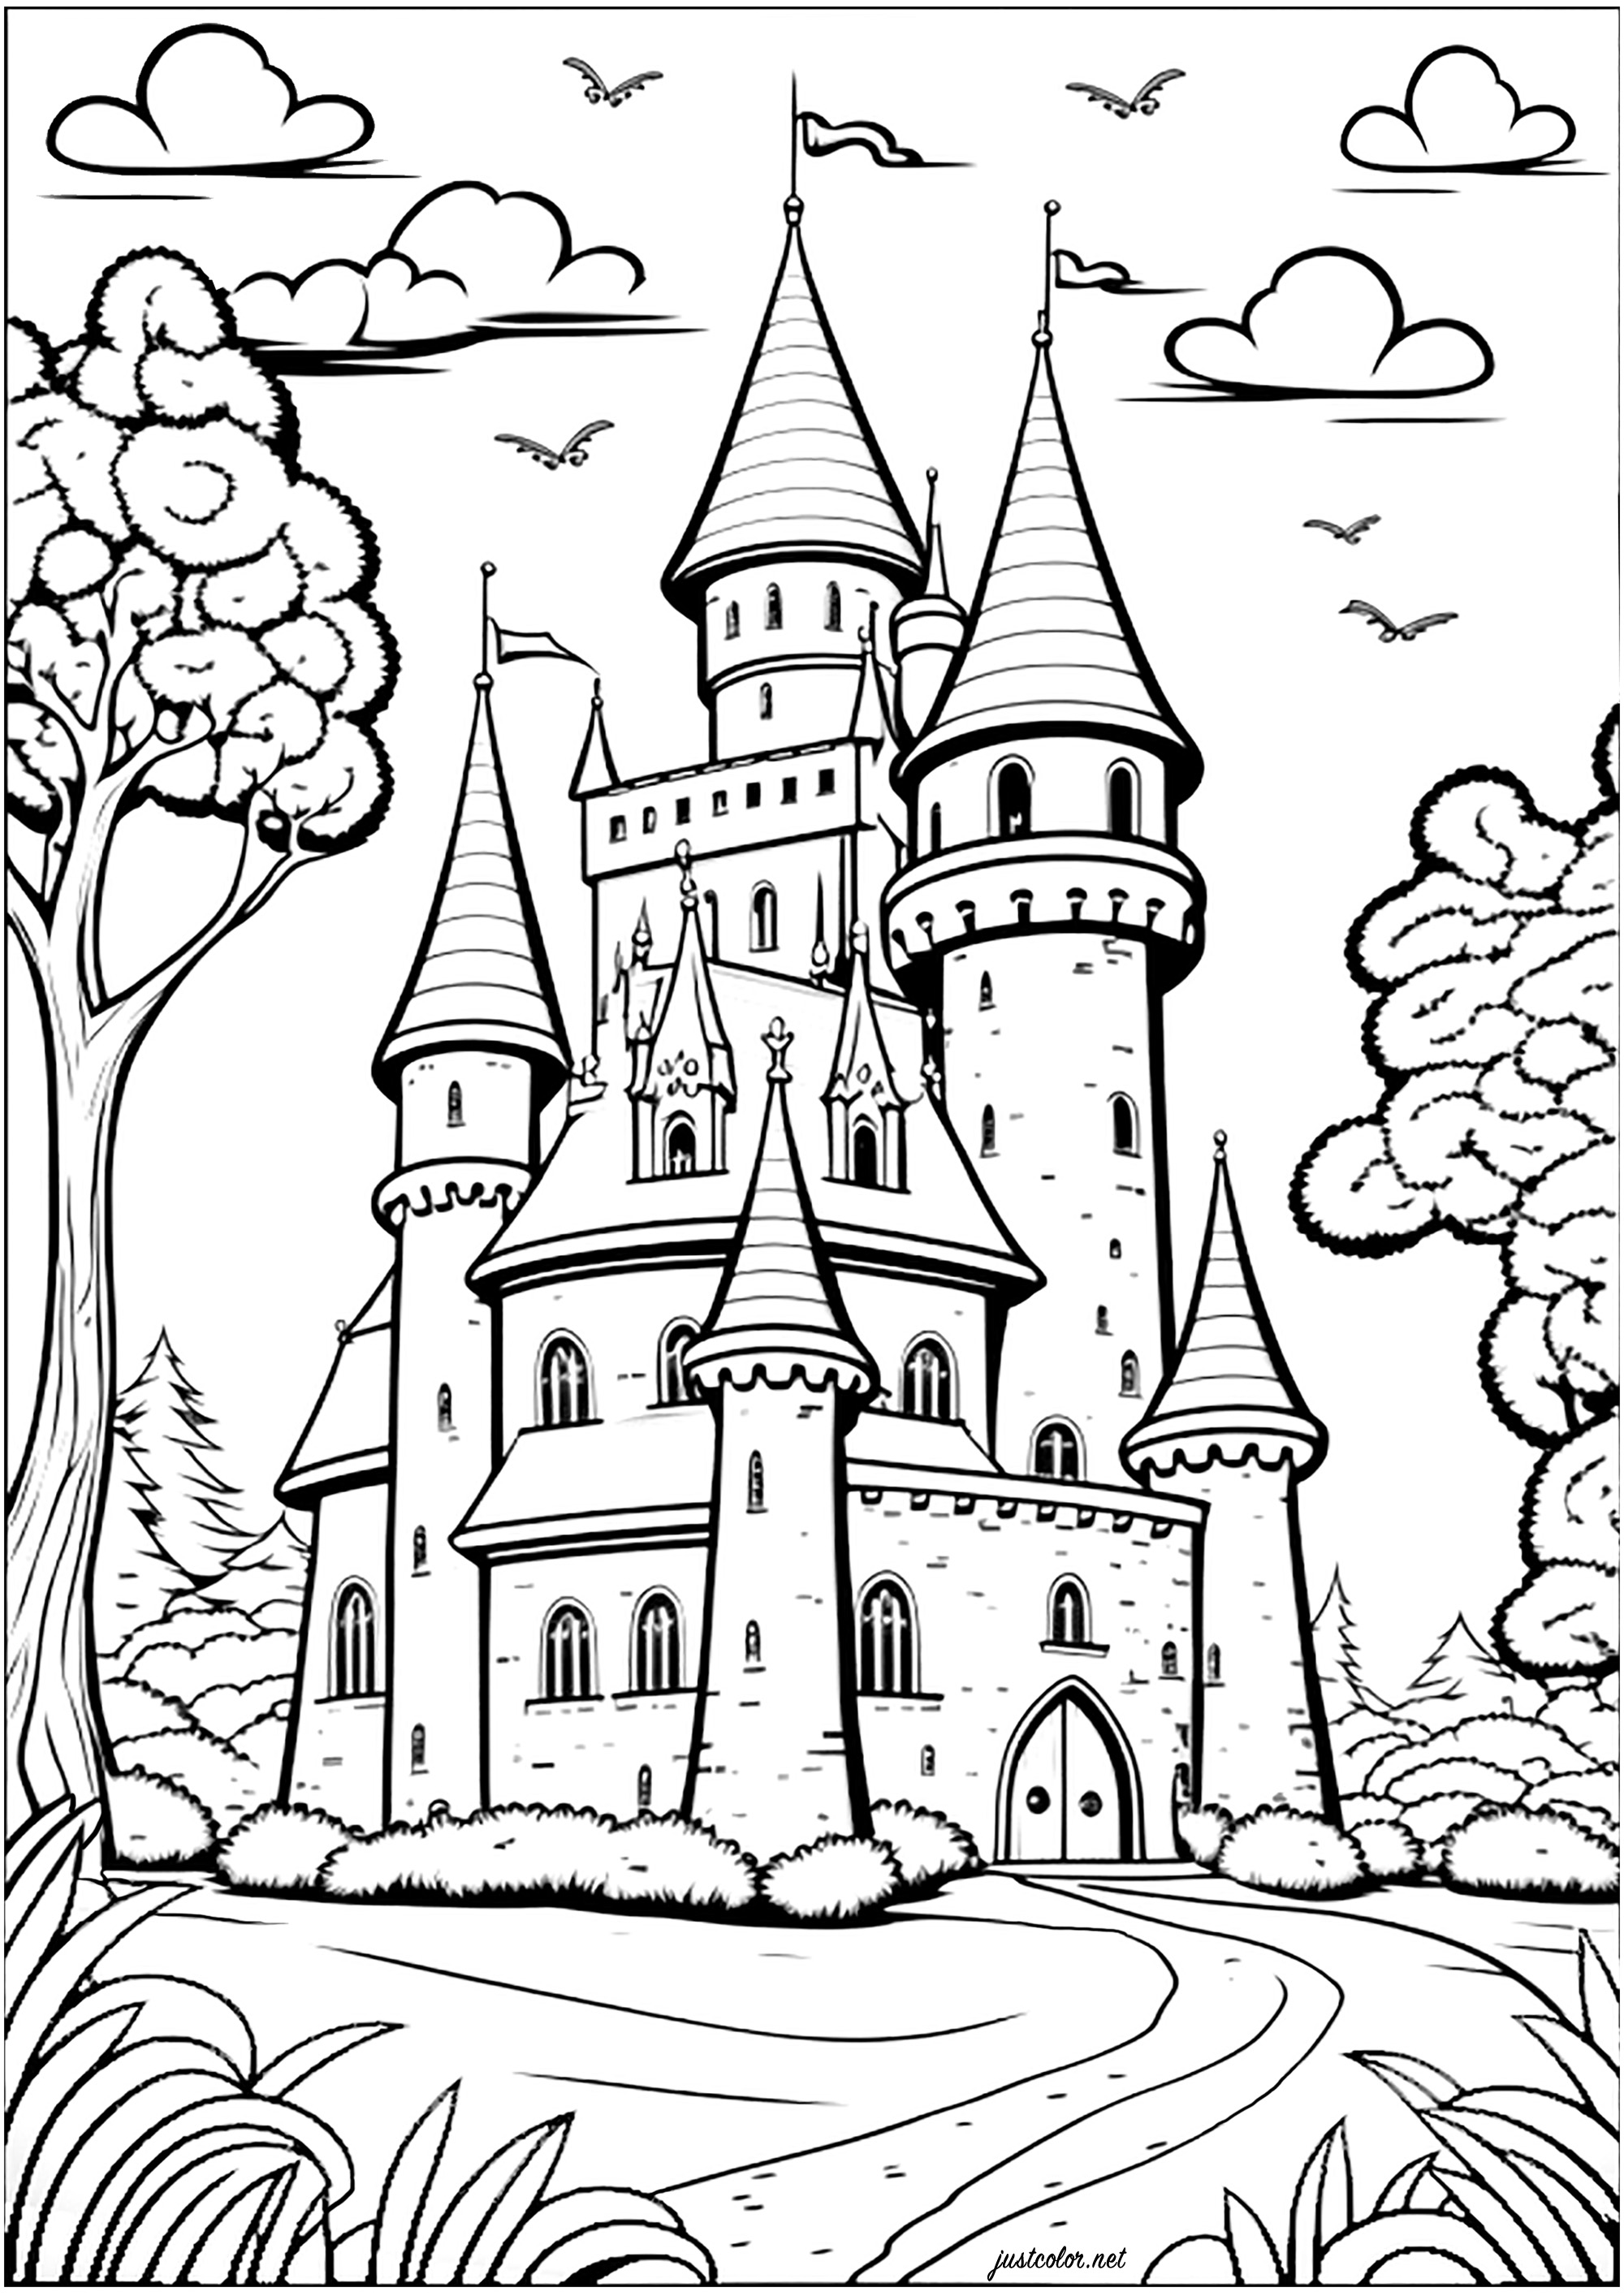 Colorare un castello in un regno immaginarioColora tutte le torrette, le finestre, le porte e le pareti per un momento incantato!